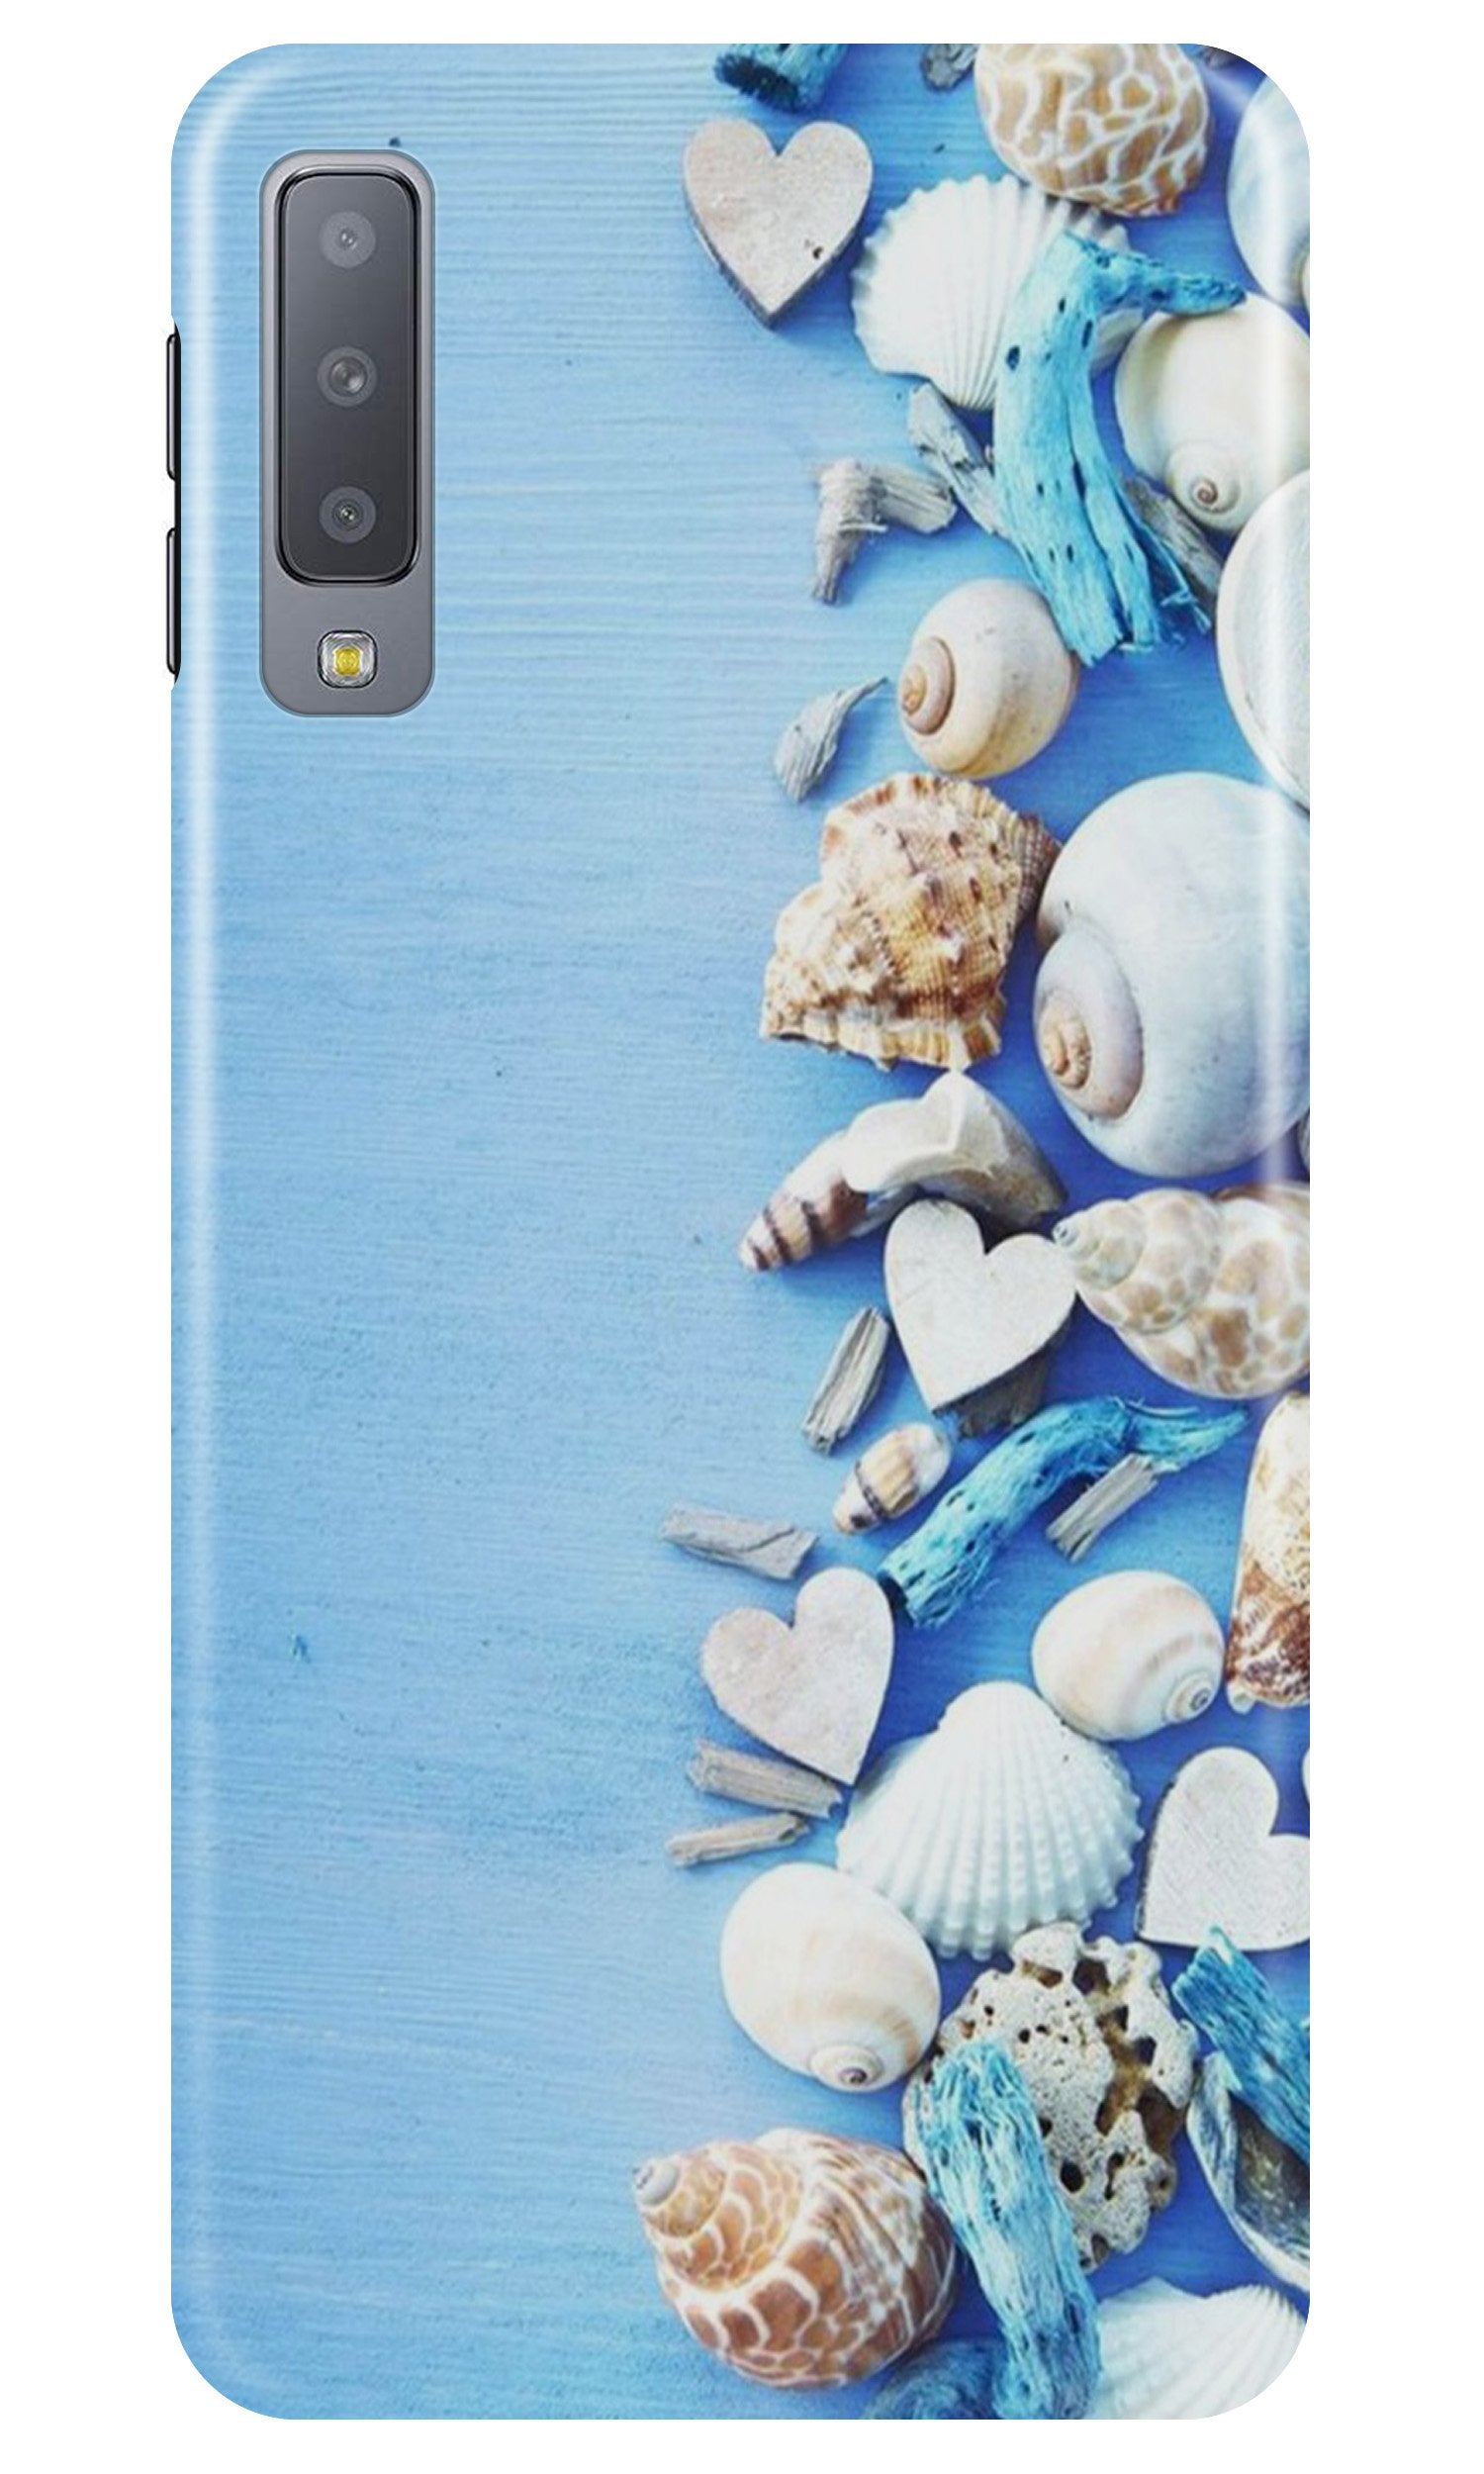 Sea Shells2 Case for Samsung Galaxy A70